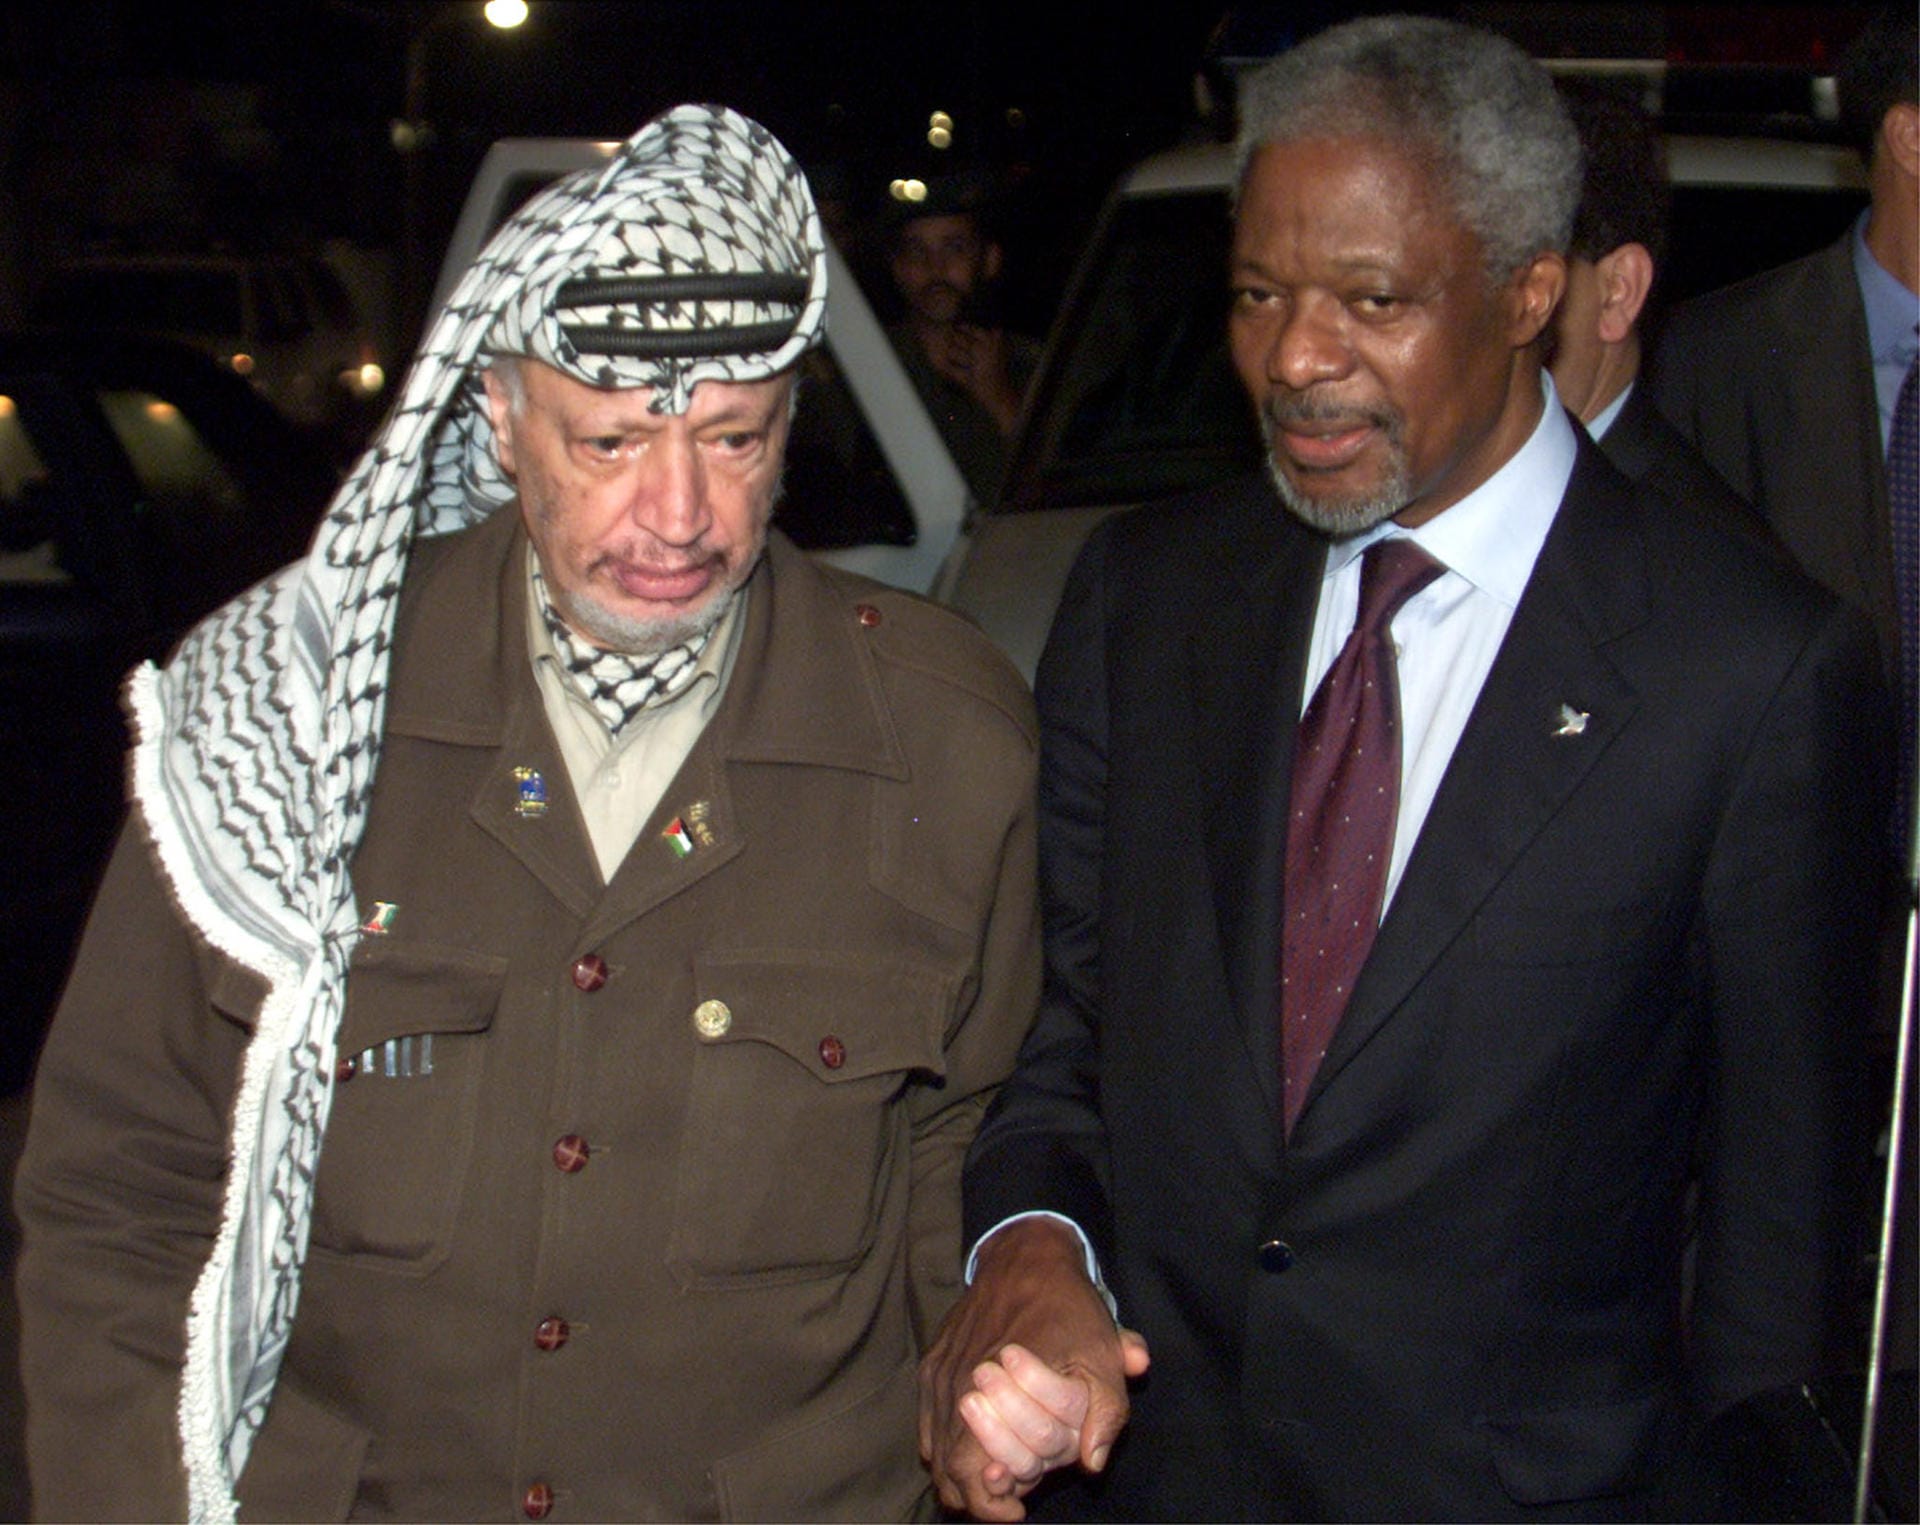 Mit seiner Reform wollte Anna die sozialen und ökonomischen Arbeiten der Vereinten Nationen sowie die Beachtung der Menschenrechte stärken. Das Bild zeigt Annan im Oktober 2000 mit dem ehemaligen Palästinenser-Präsidenten Jassir Arafat. Annan versuchte zwischen Israelis und Palästinenser zu vermitteln, nachdem es durch Gewalttaten auf beiden Seiten zu Toten kam.